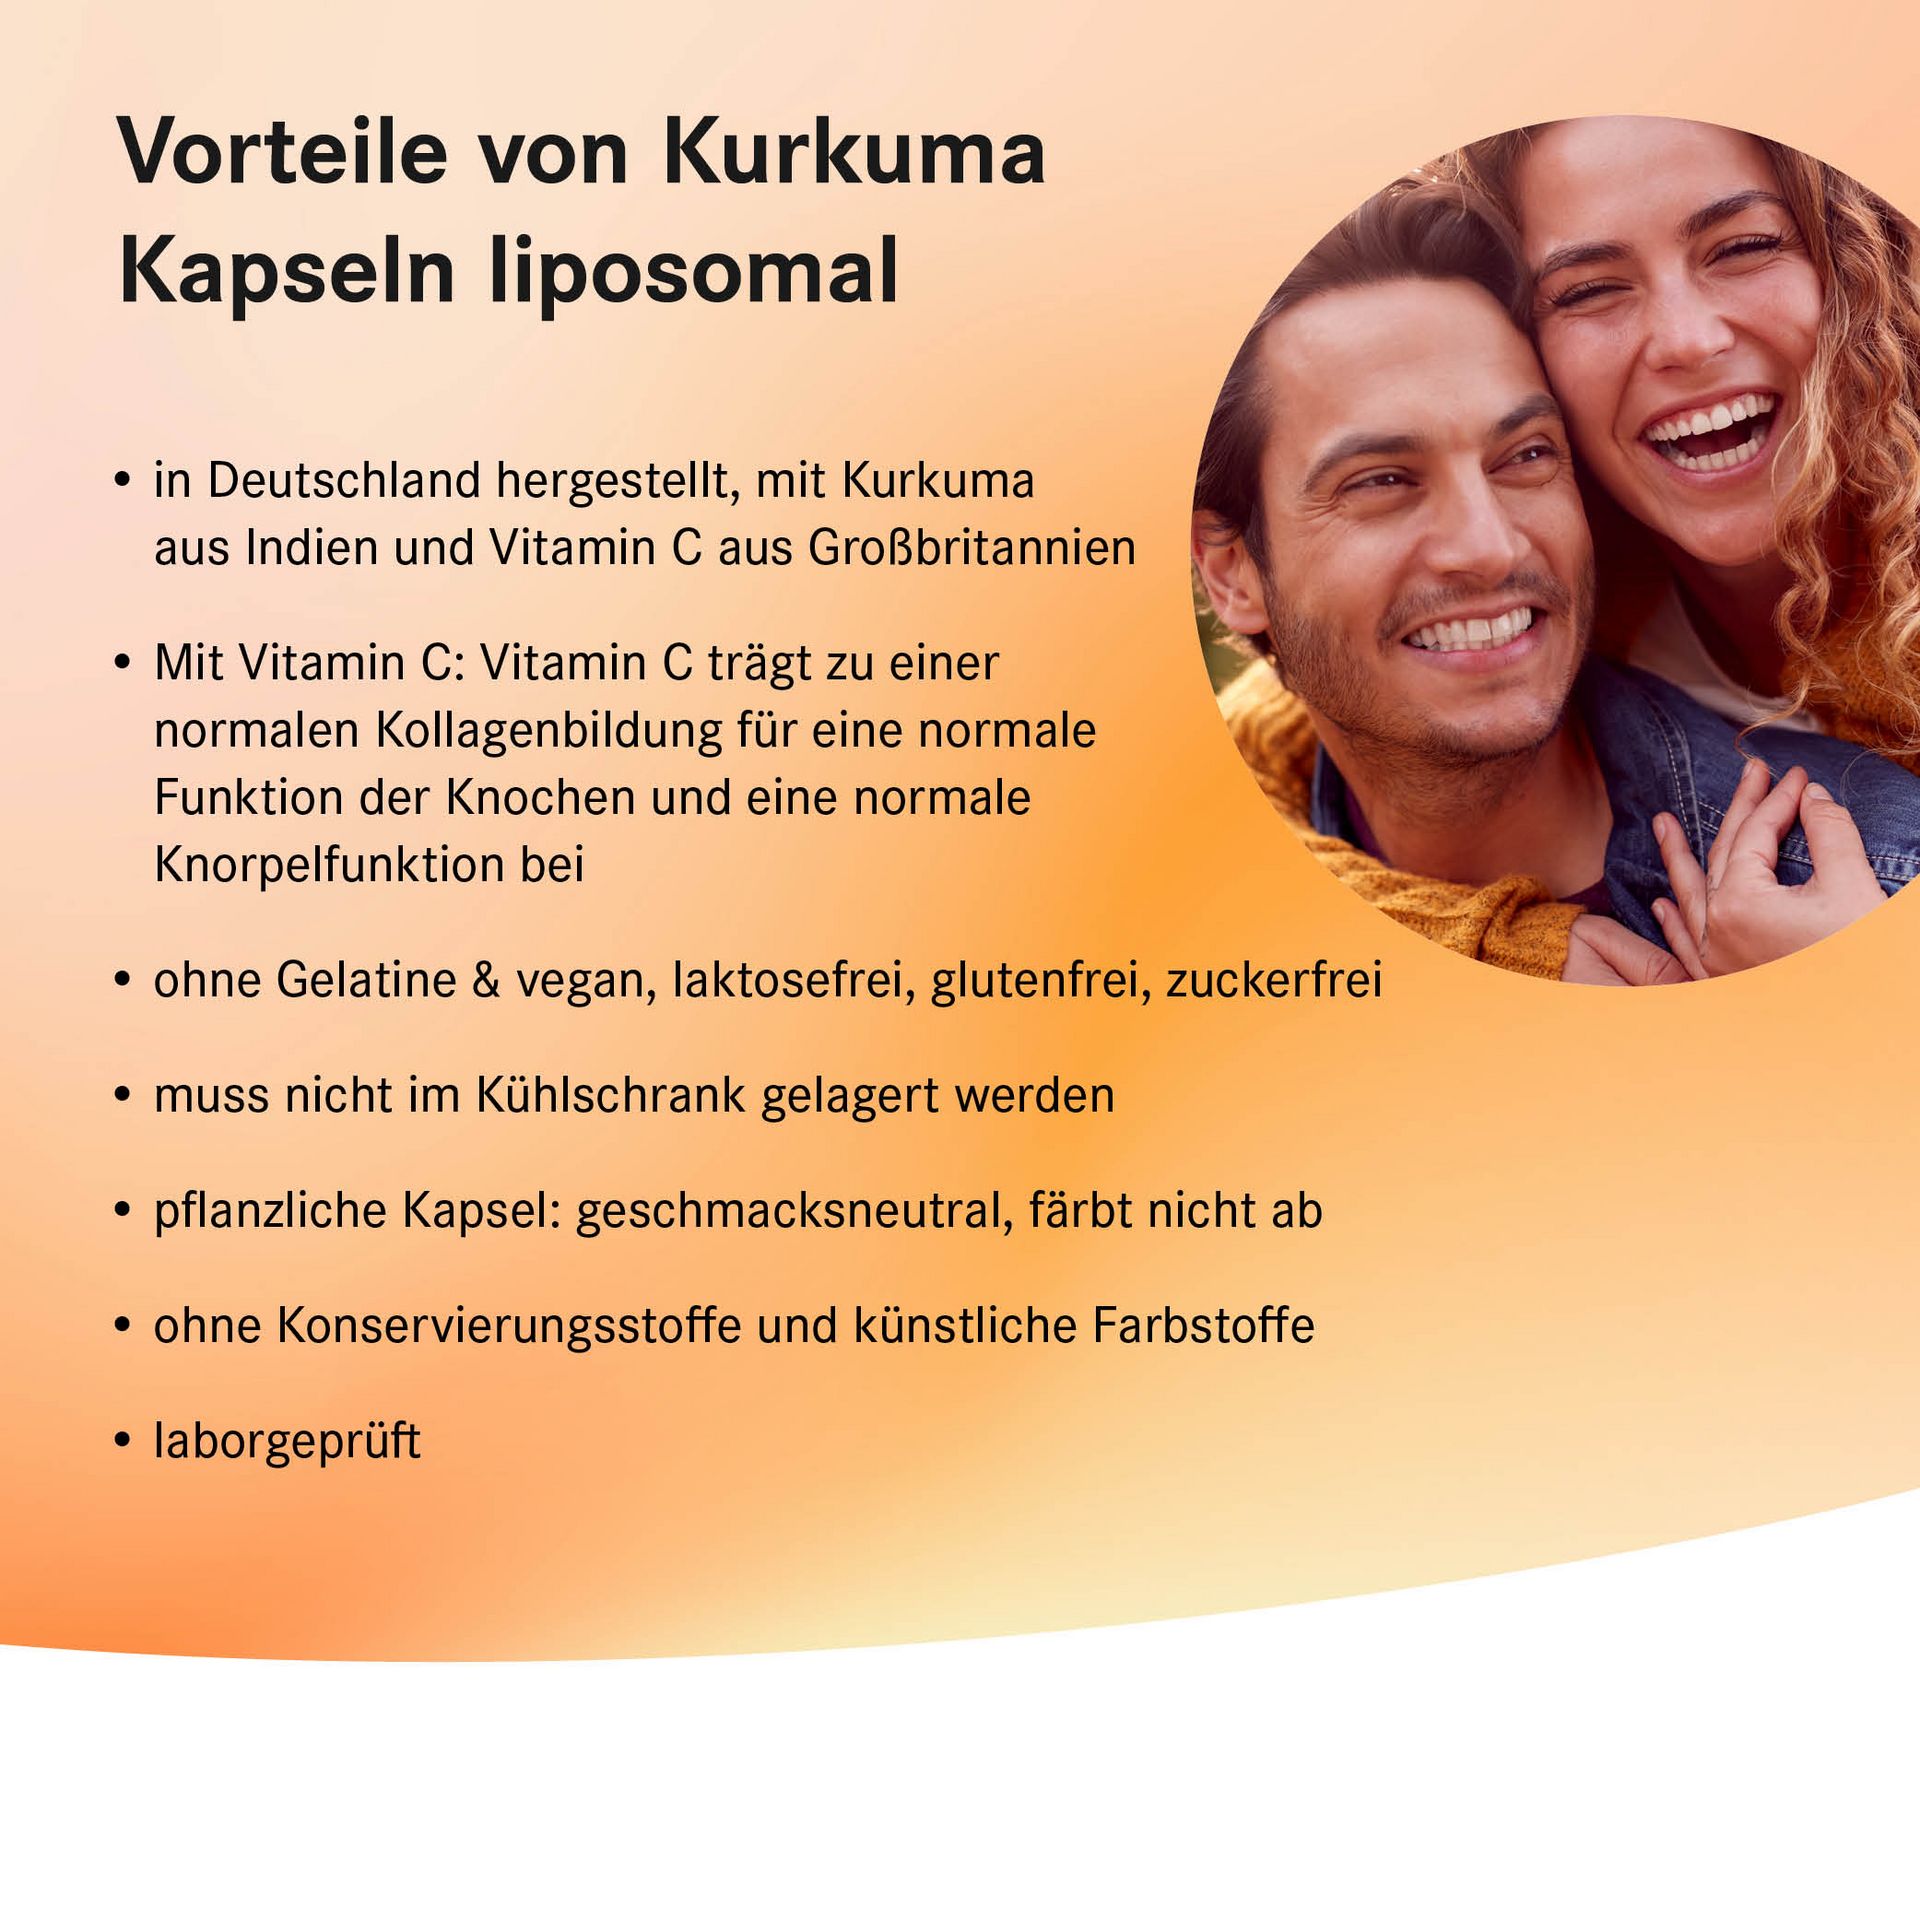 Auflistung der Vorteile von Kurkuma Kapseln liposomal mit KeyVisual